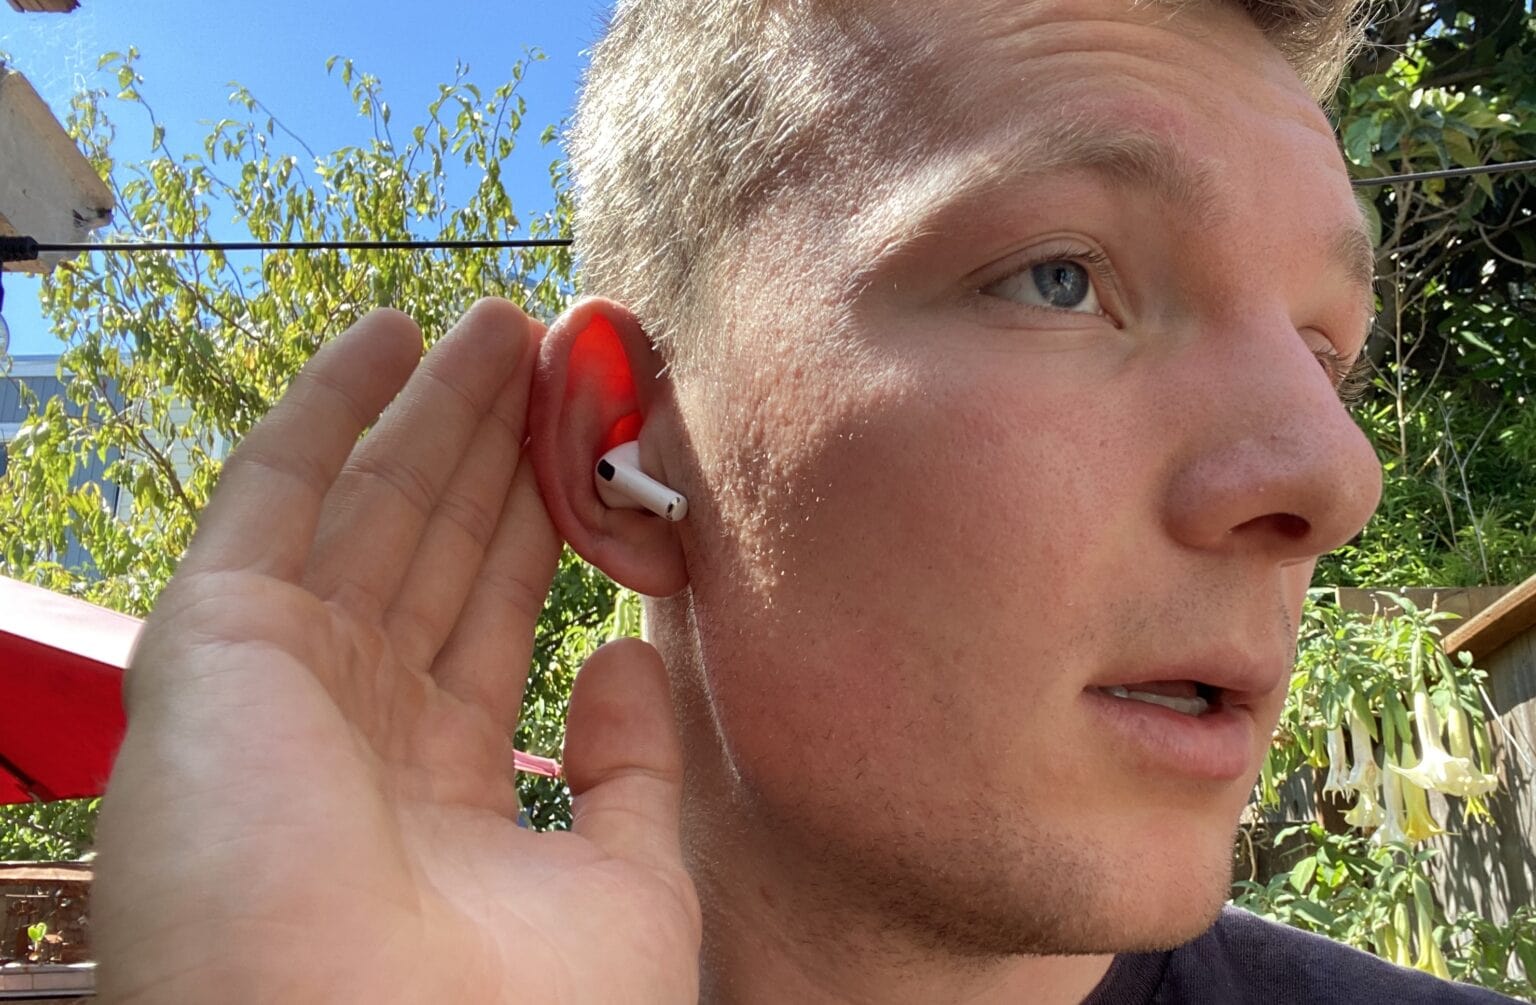 Dari iPhoneIslam.com, Seorang pemuda memasukkan AirPods 4 berwarna merah ke telinganya, dengan latar belakang luar ruangan yang cerah menampilkan dedaunan hijau.